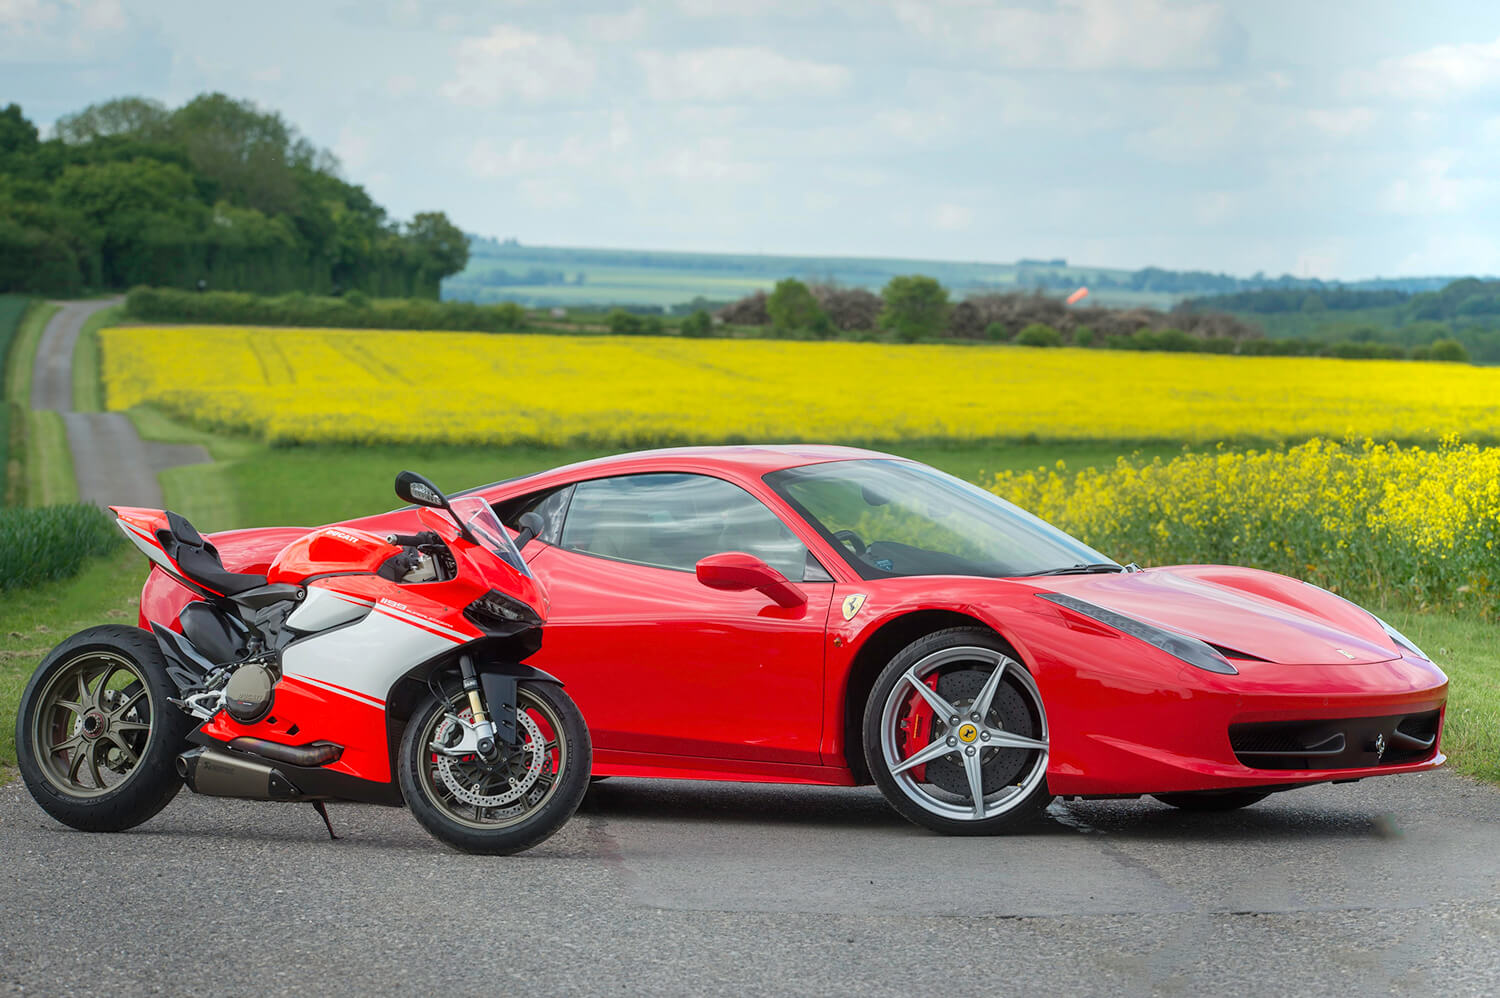 Ducati-Superlegerra-and-Ferrari-458-b